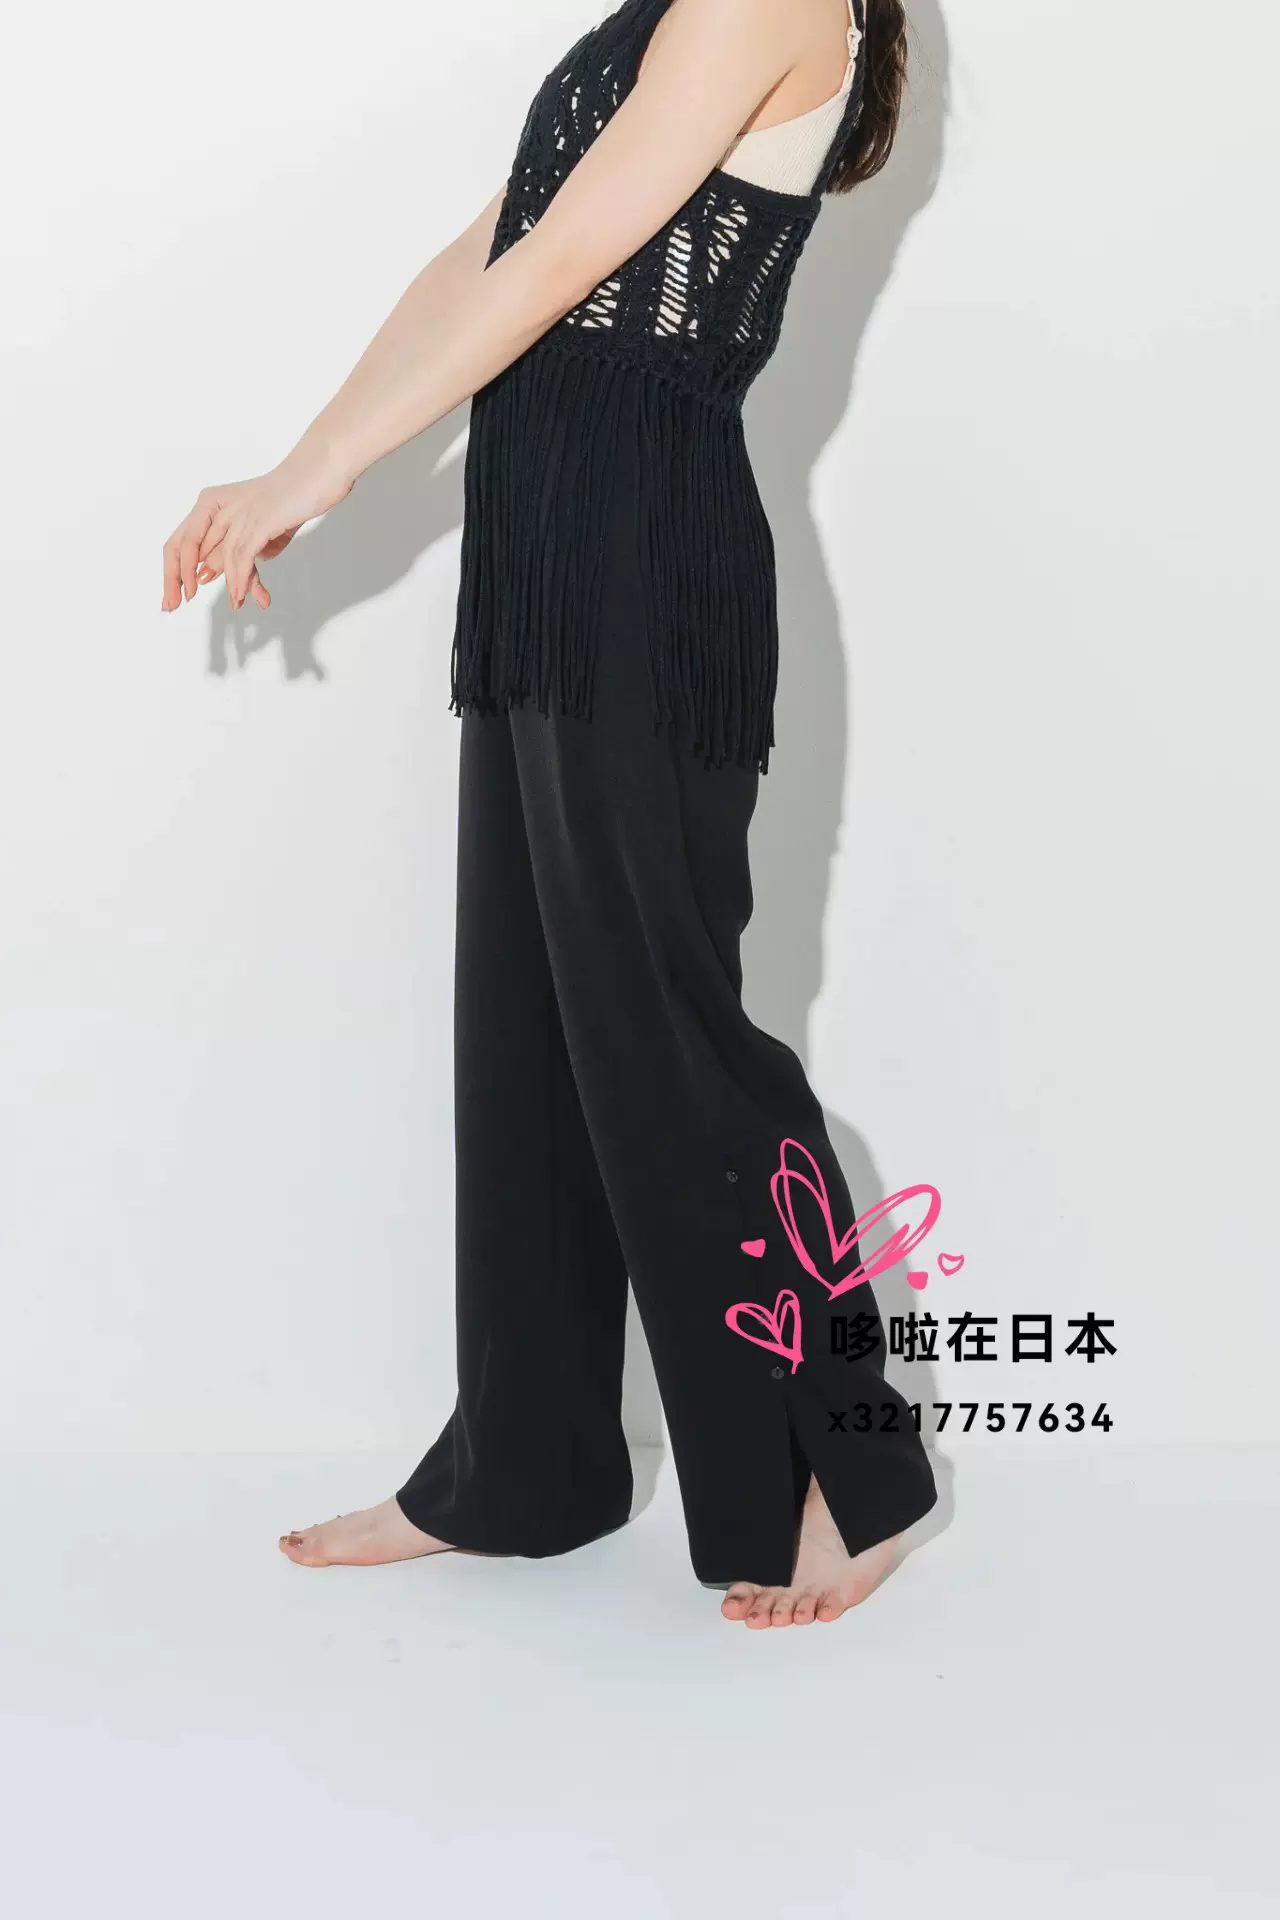 日本代購拼郵包稅eaphi休閒褲asymmetry wrap belt pants-Taobao